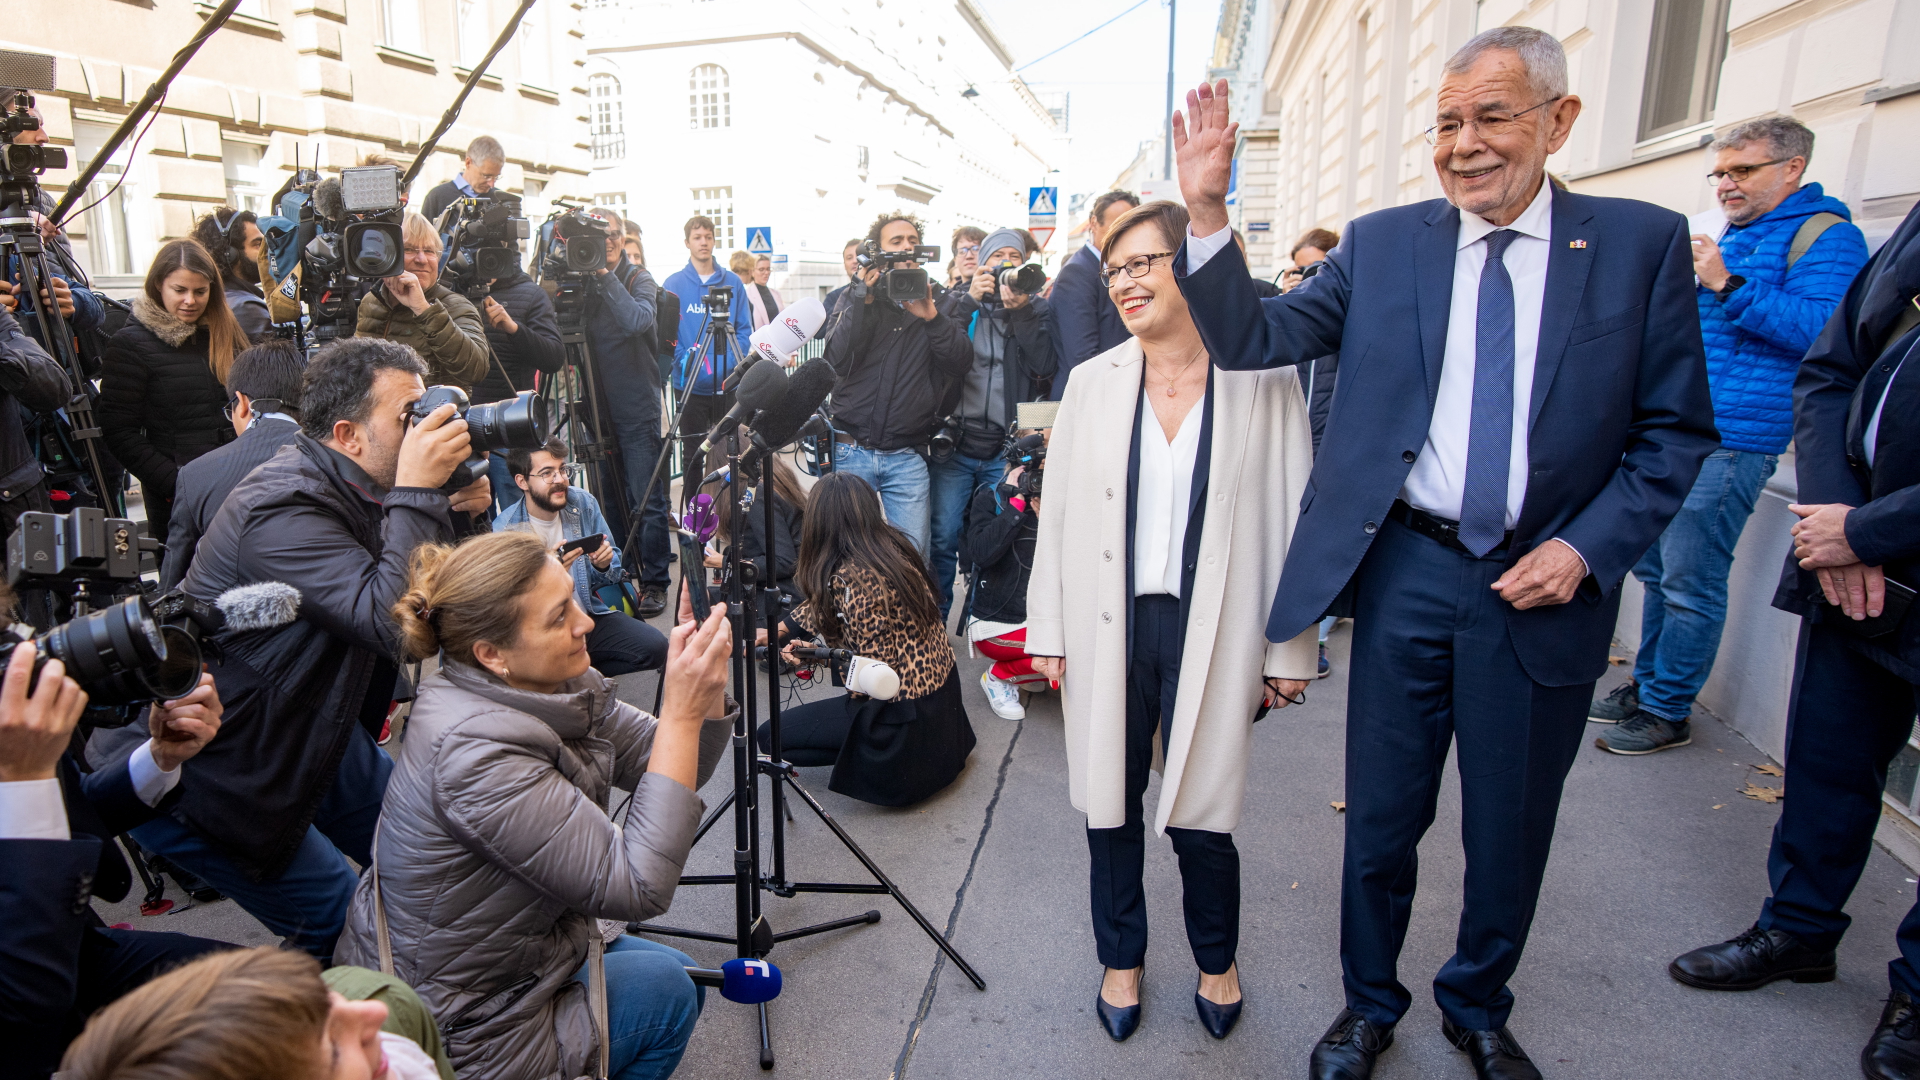 Alexander Van der Bellen und seine Frau Doris Schmidauer am Tag der Wahl. | dpa